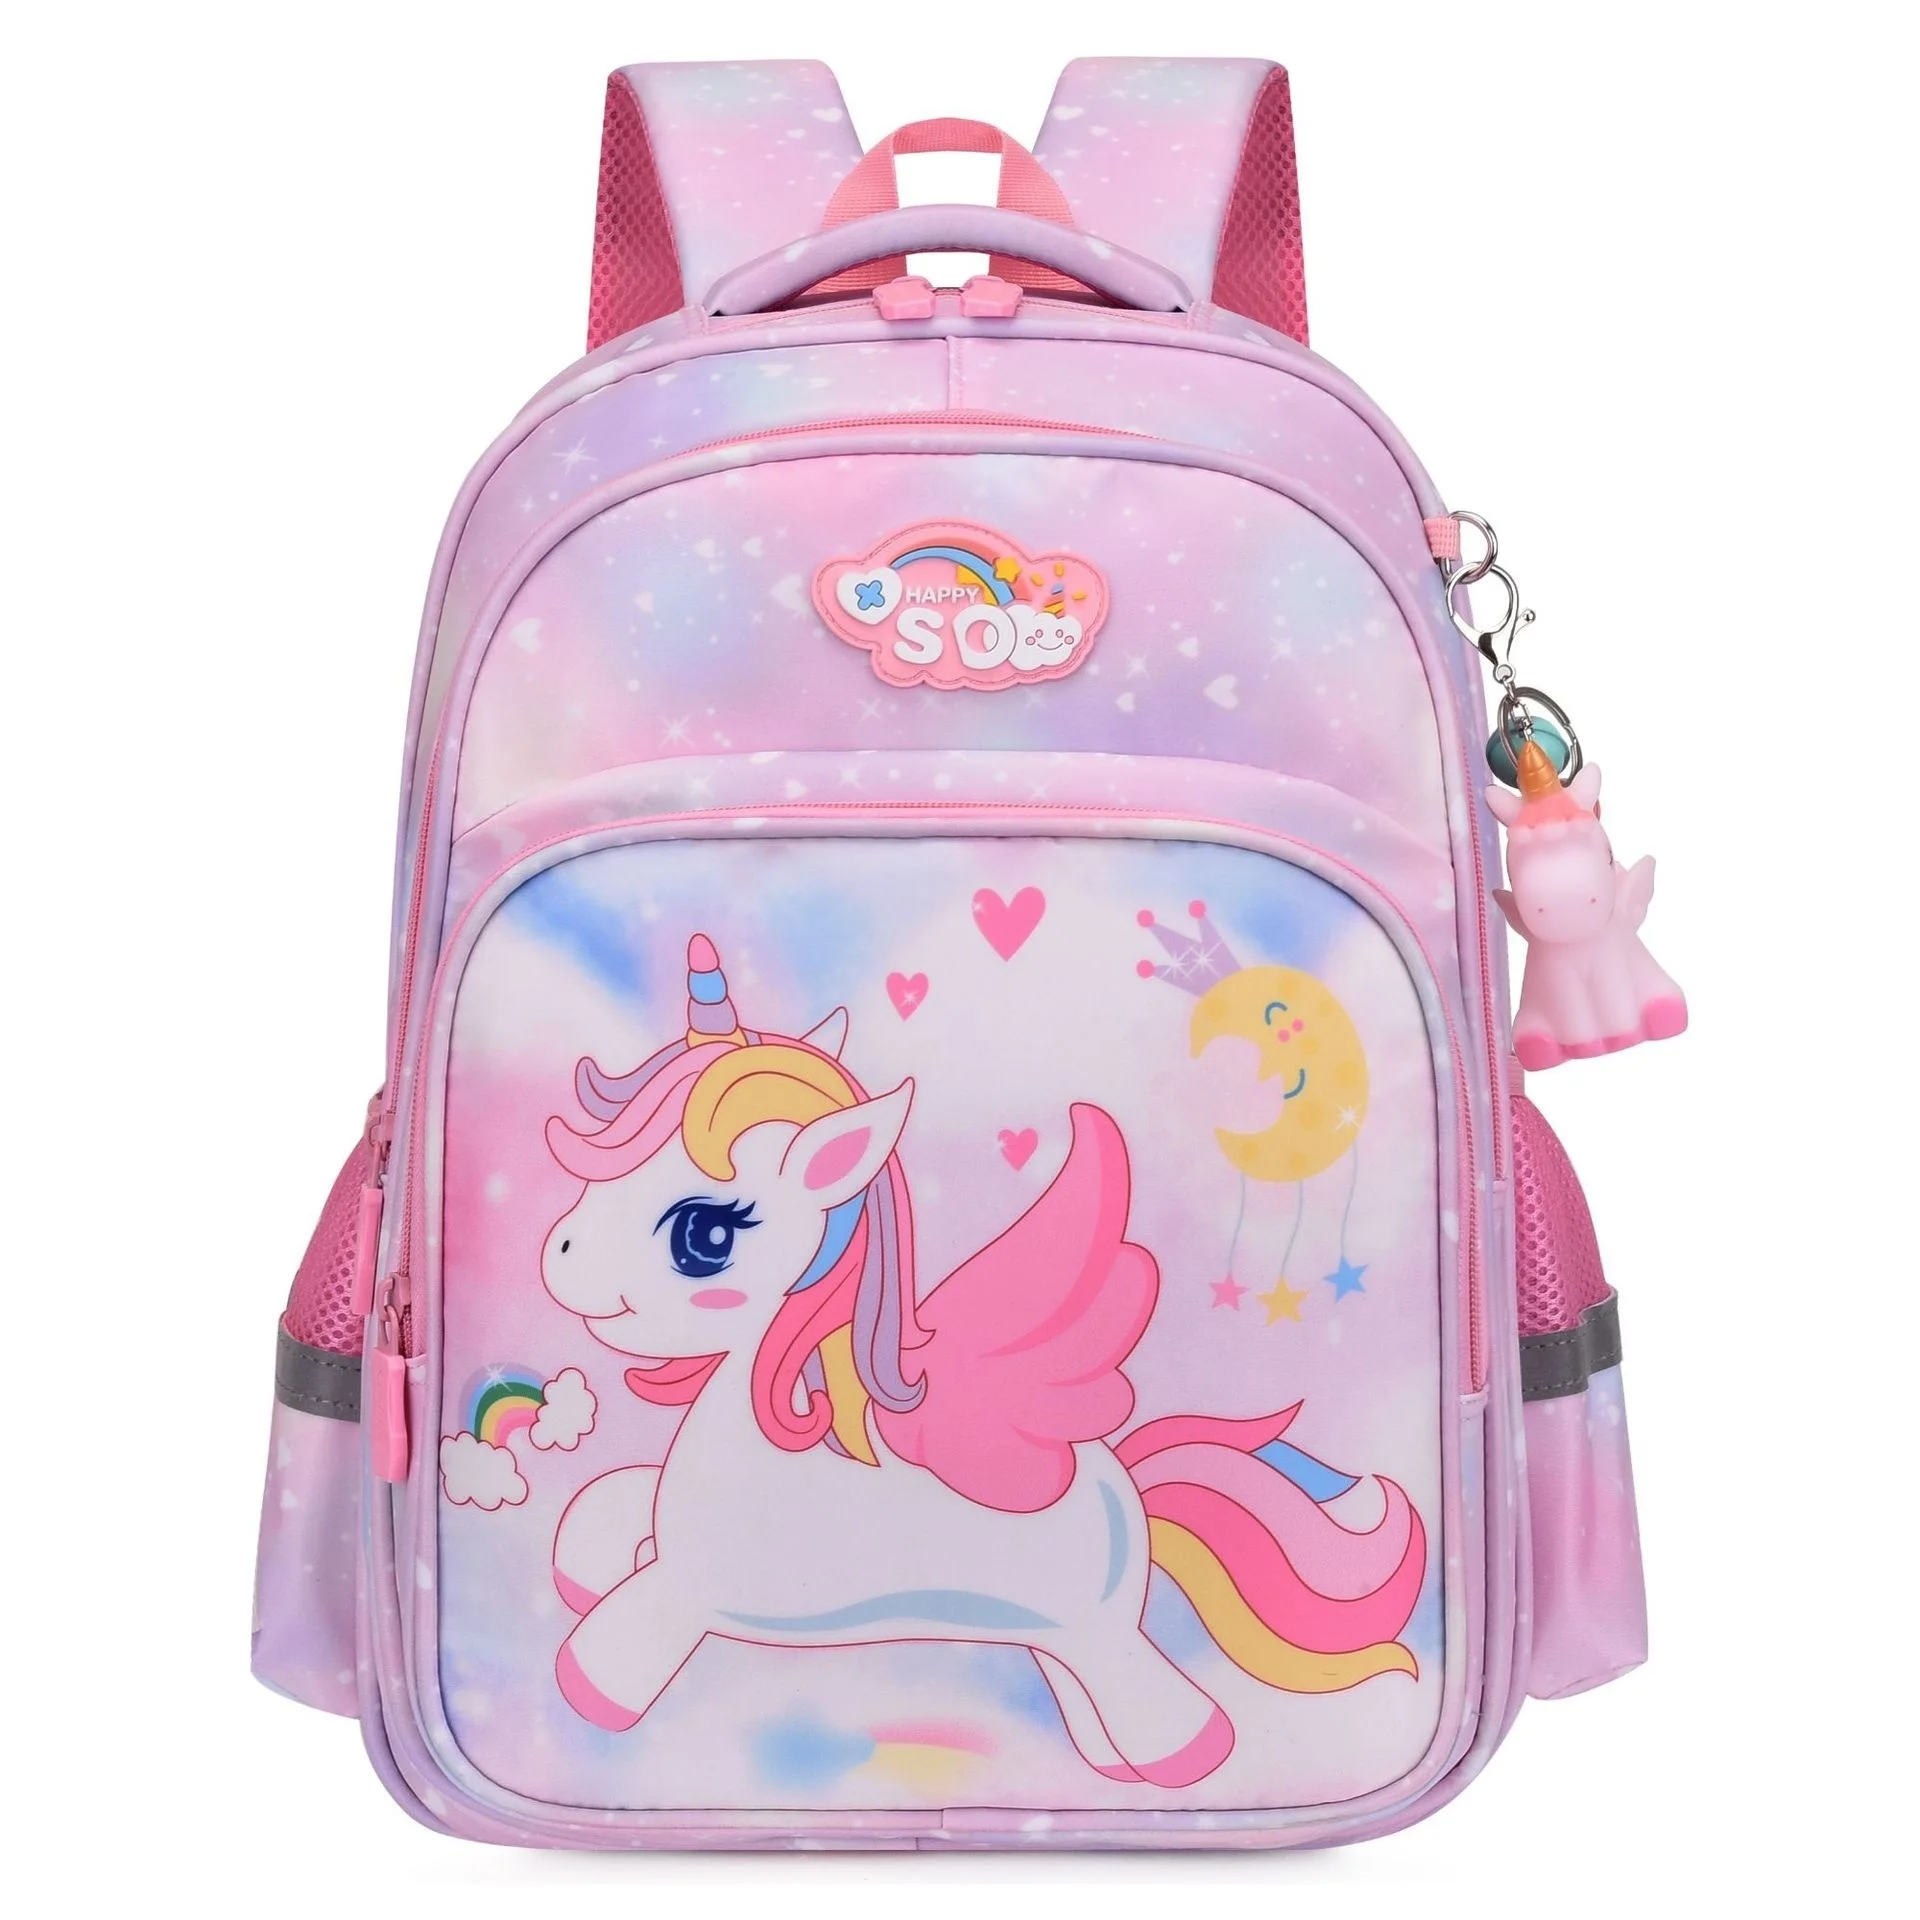 

Cute Cartoon Unicorn Girls School Bags Children Primary School Backpack Schoolbags Lager Capacity Kawaii Kids Backpacks 2 Sizes